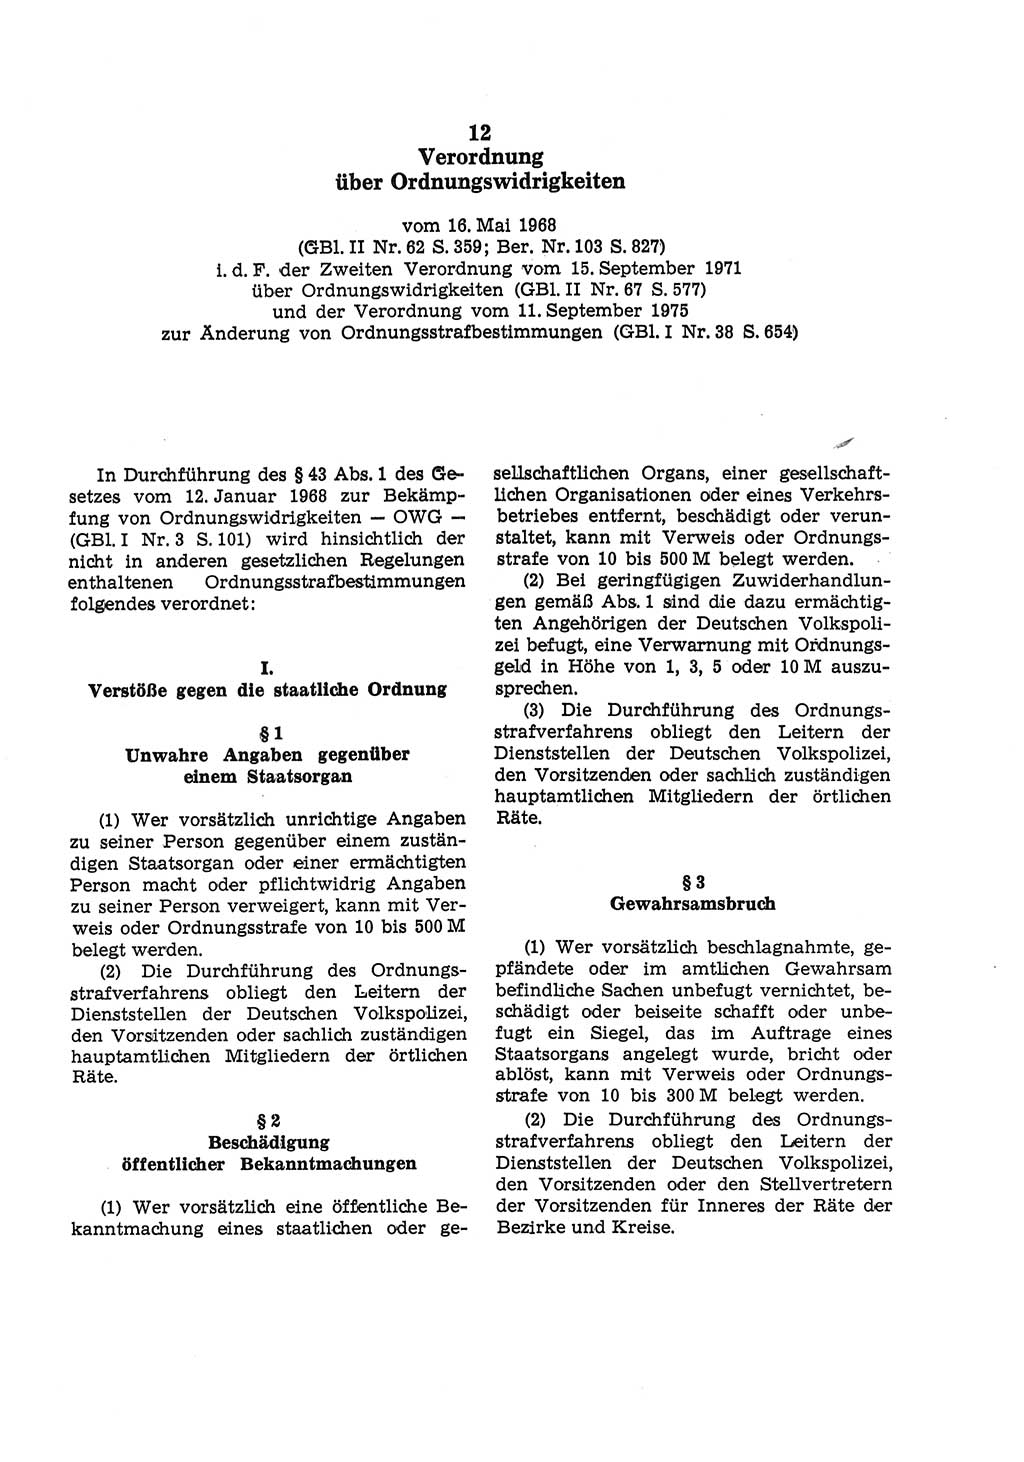 Strafgesetzbuch (StGB) der Deutschen Demokratischen Republik (DDR) und angrenzende Gesetze und Bestimmungen 1975, Seite 223 (StGB DDR Ges. Best. 1975, S. 223)